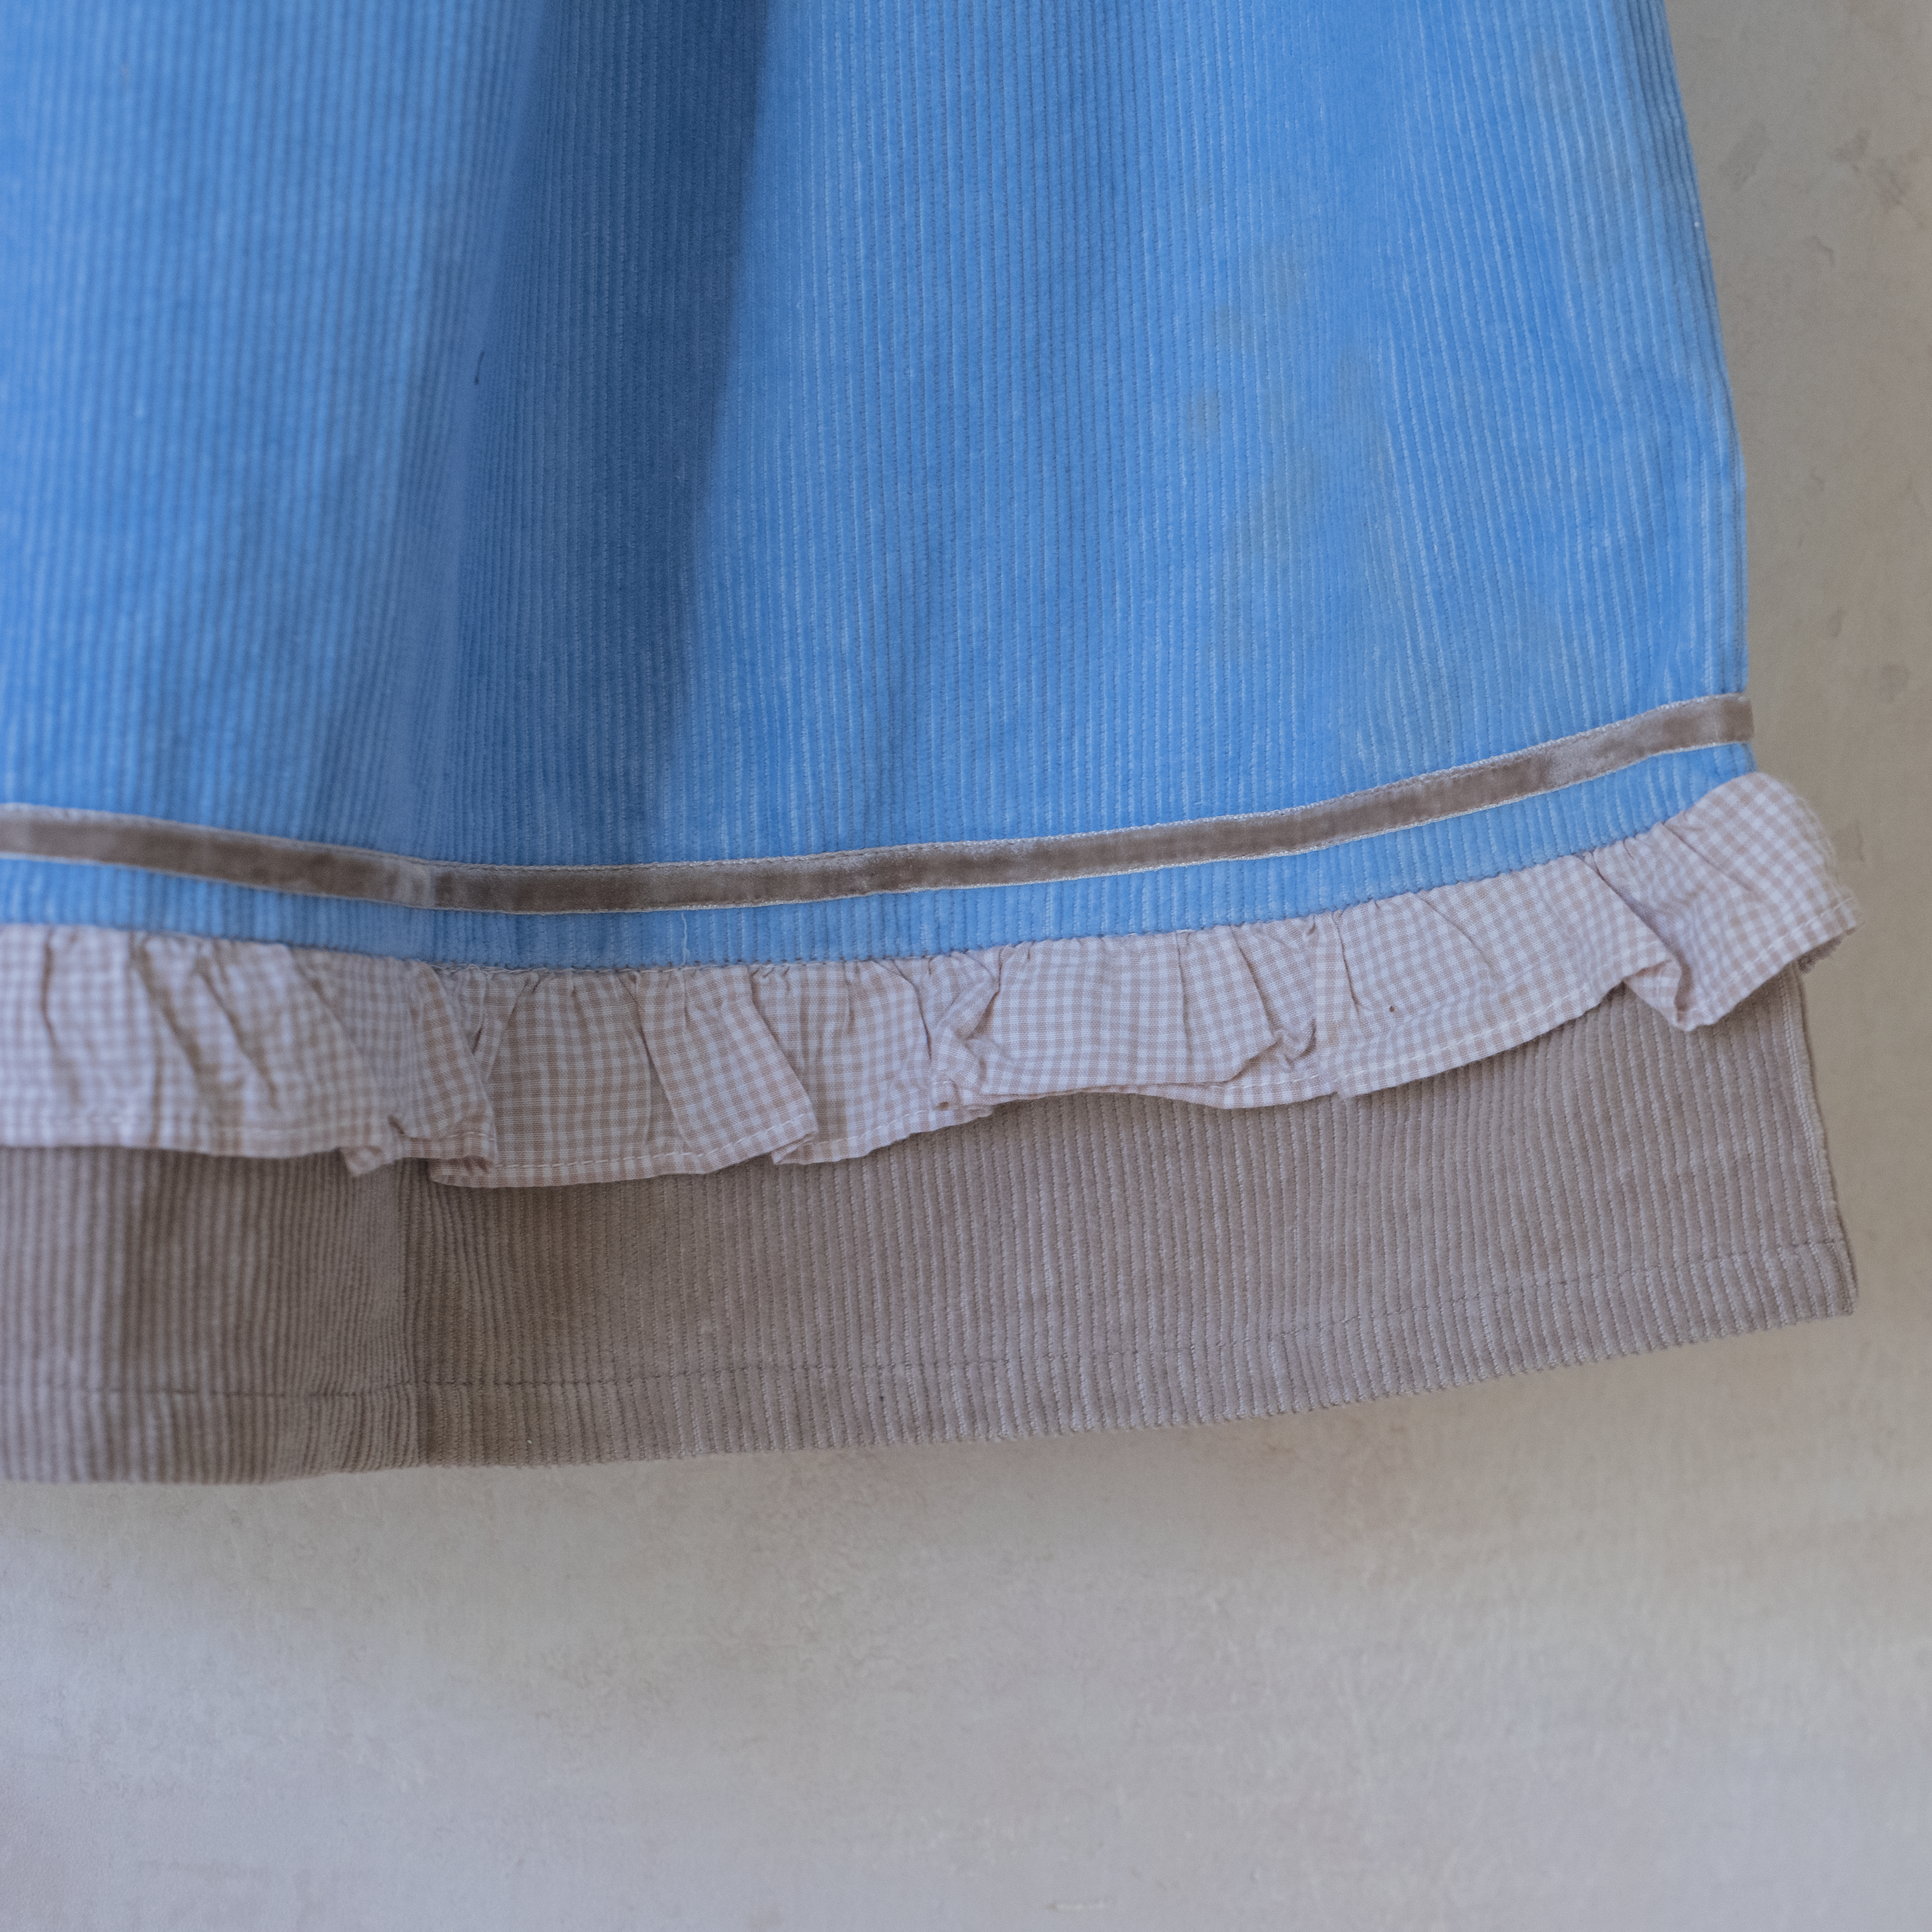 שמלת קורדרוי בצבע תכלת עם רקמה של בבר | 6-7 שנים